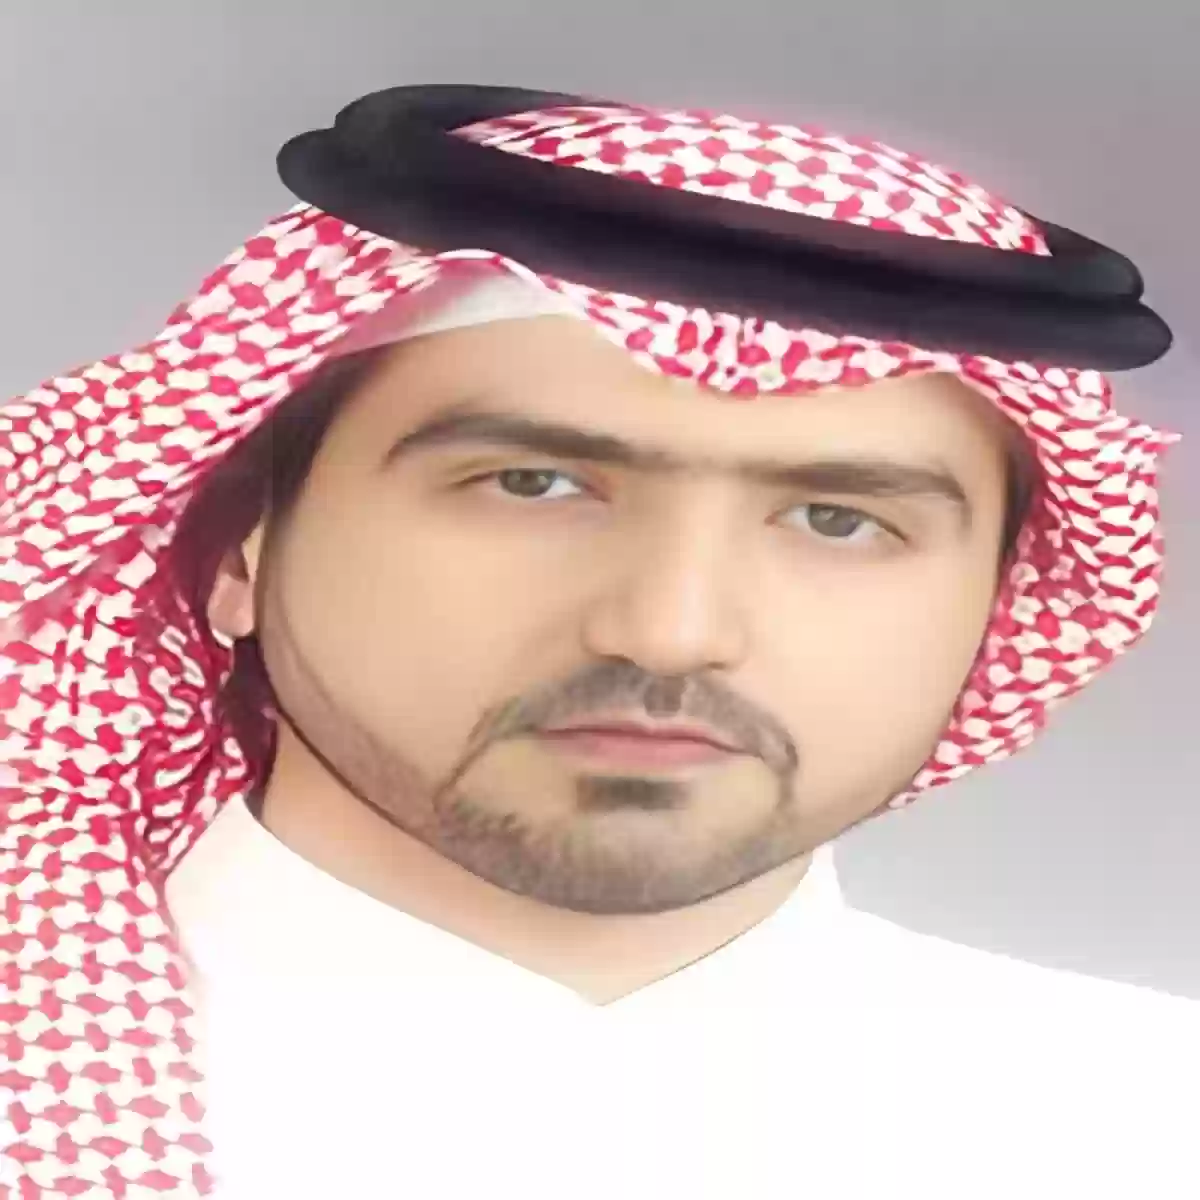 الكاتب بدر بن سعود يطالب بحقوق المسنين في السعودية «التقرير»